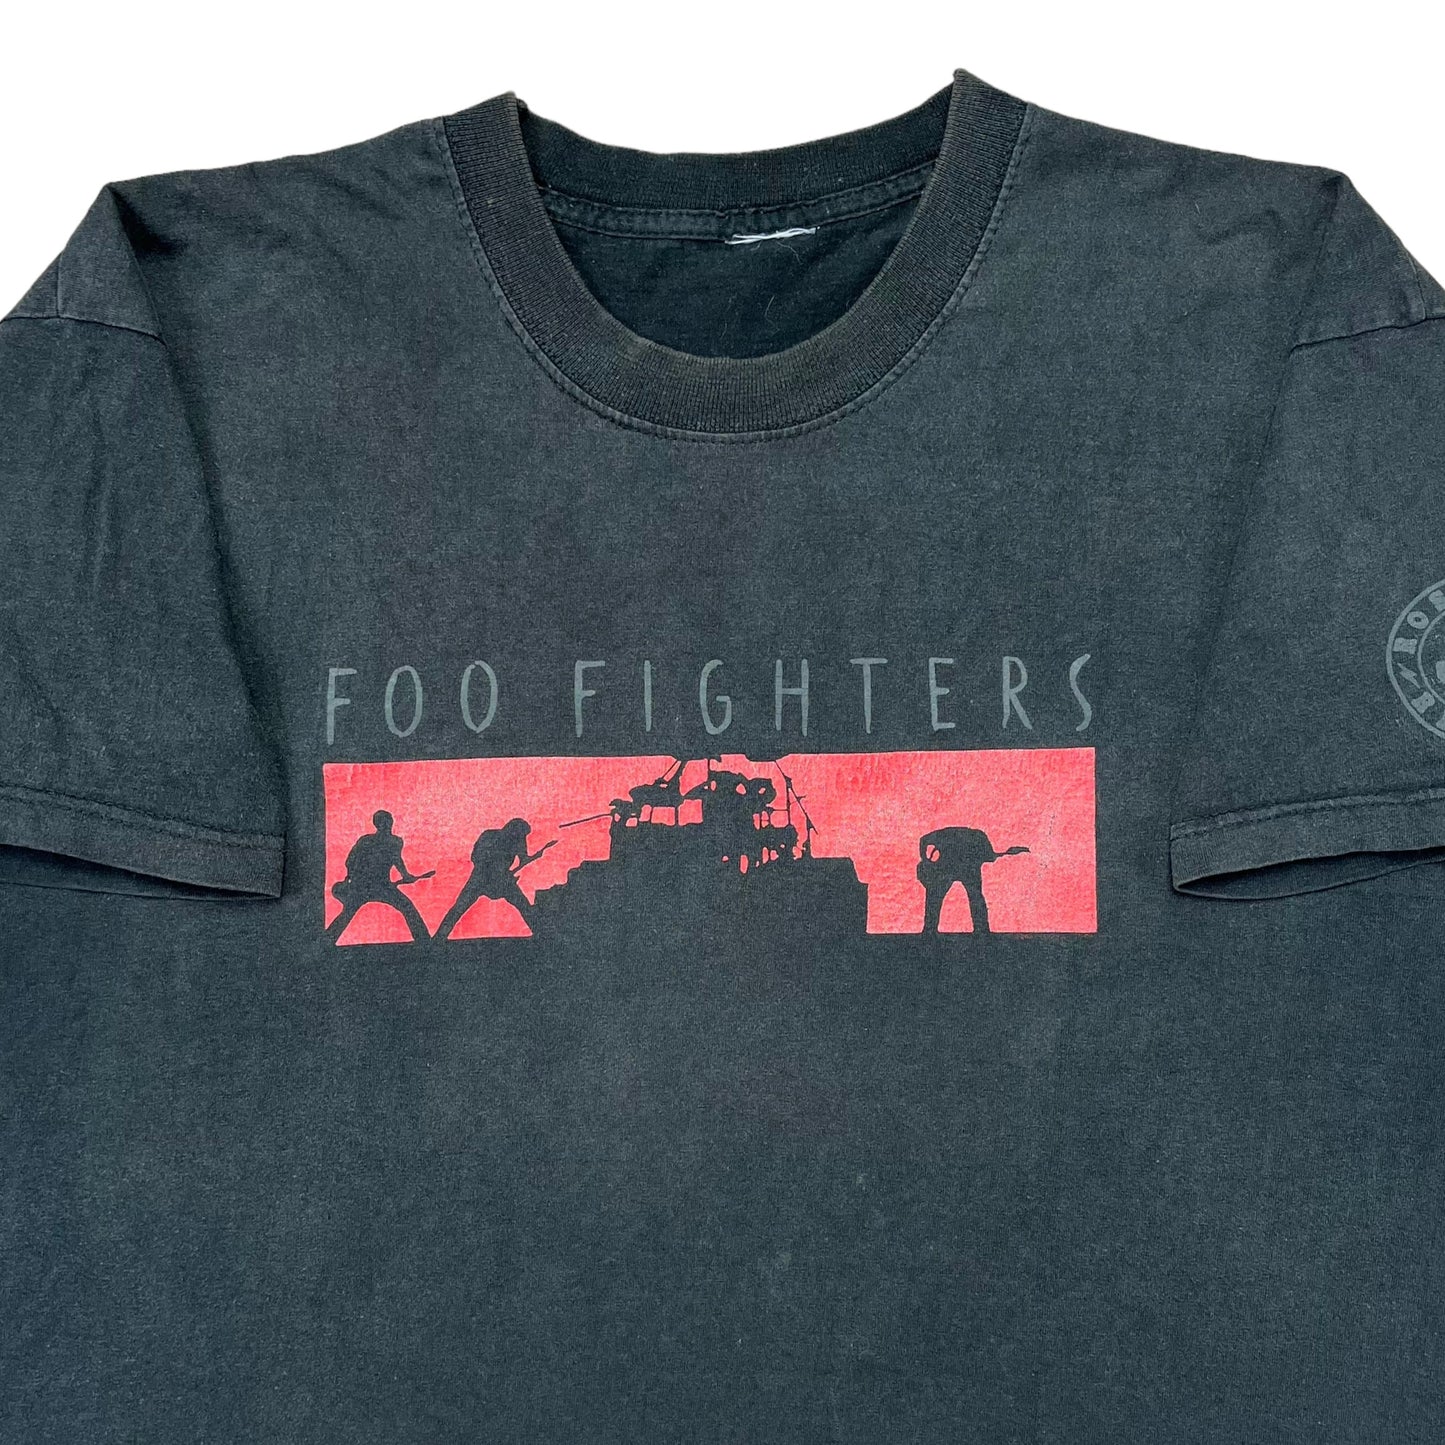 2003 Foo Fighters (M/L)